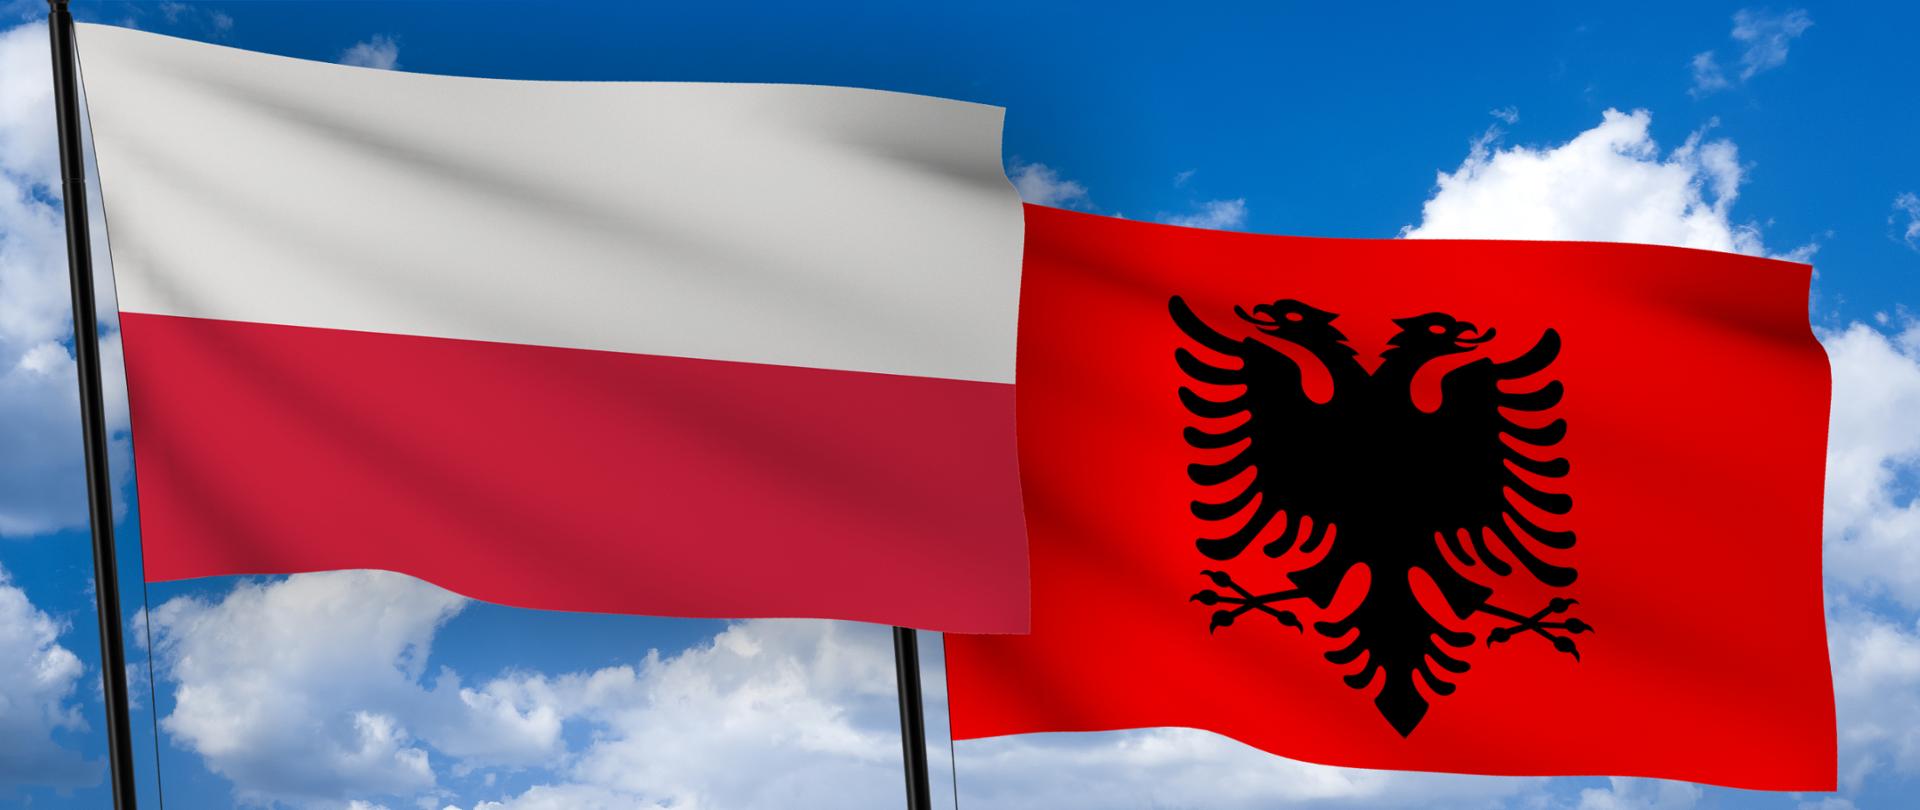 Flagi Polski i Albanii. W tle błękitne niebo i jasne chmury.